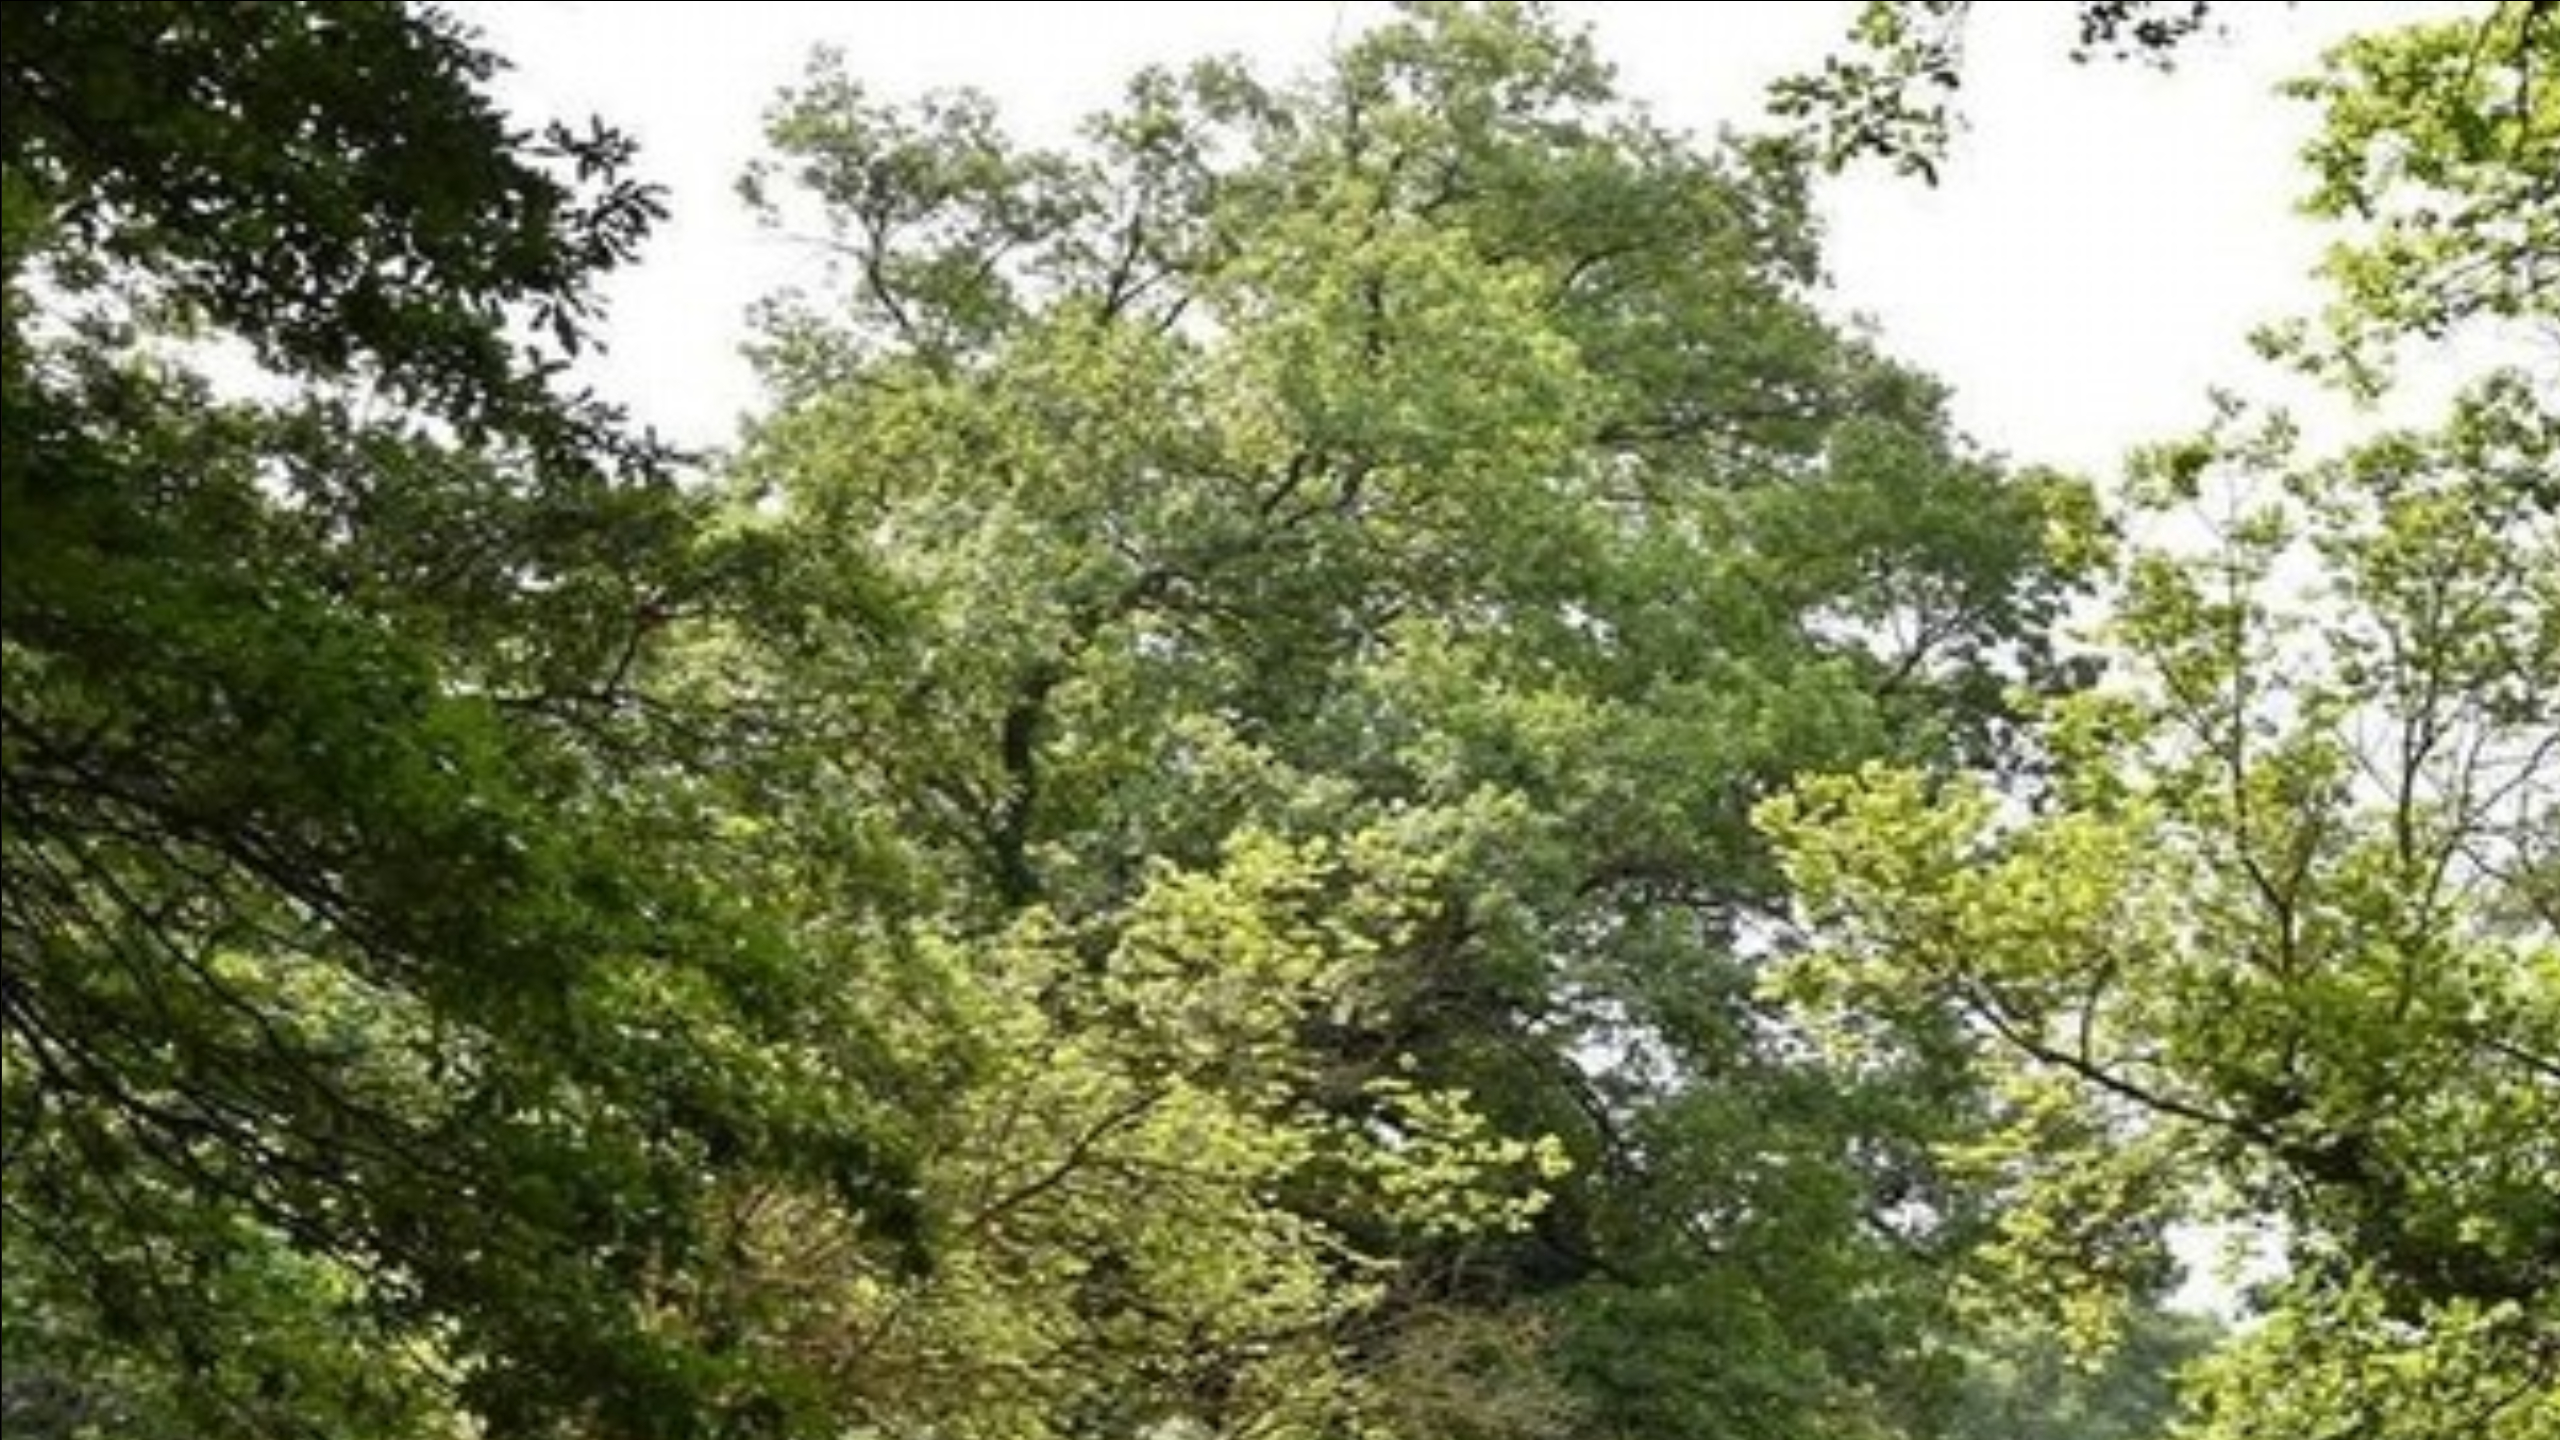 A Prato nascerà un bosco con 150 alberi in un’area comunale. “Migliorare l’ambiente utilizzando gli alberi, che sono essenziali alla vita”